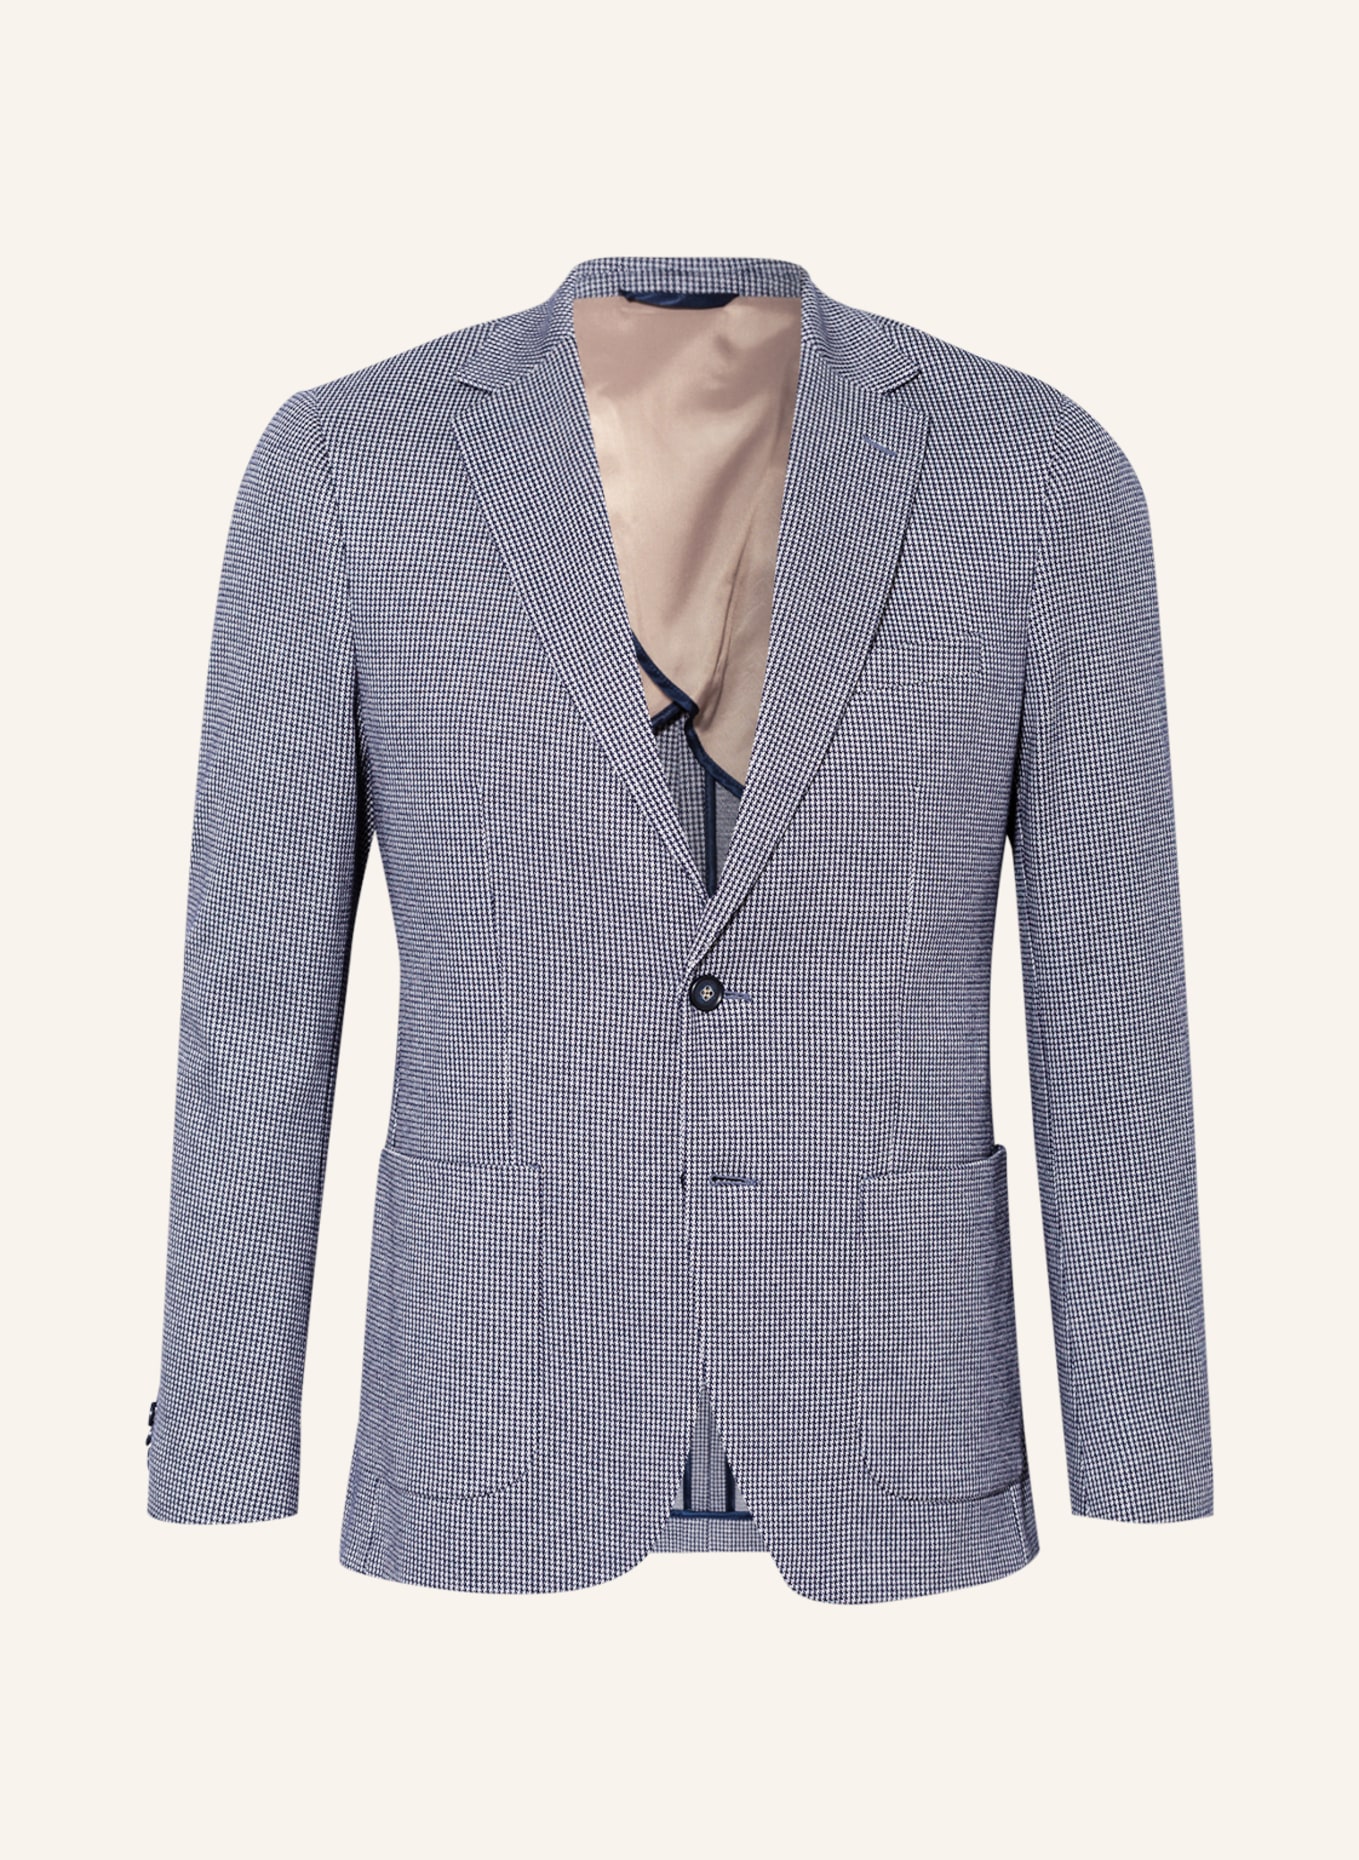 PAUL Suit jacket slim fit, Color: 600 ROYAL (Image 1)